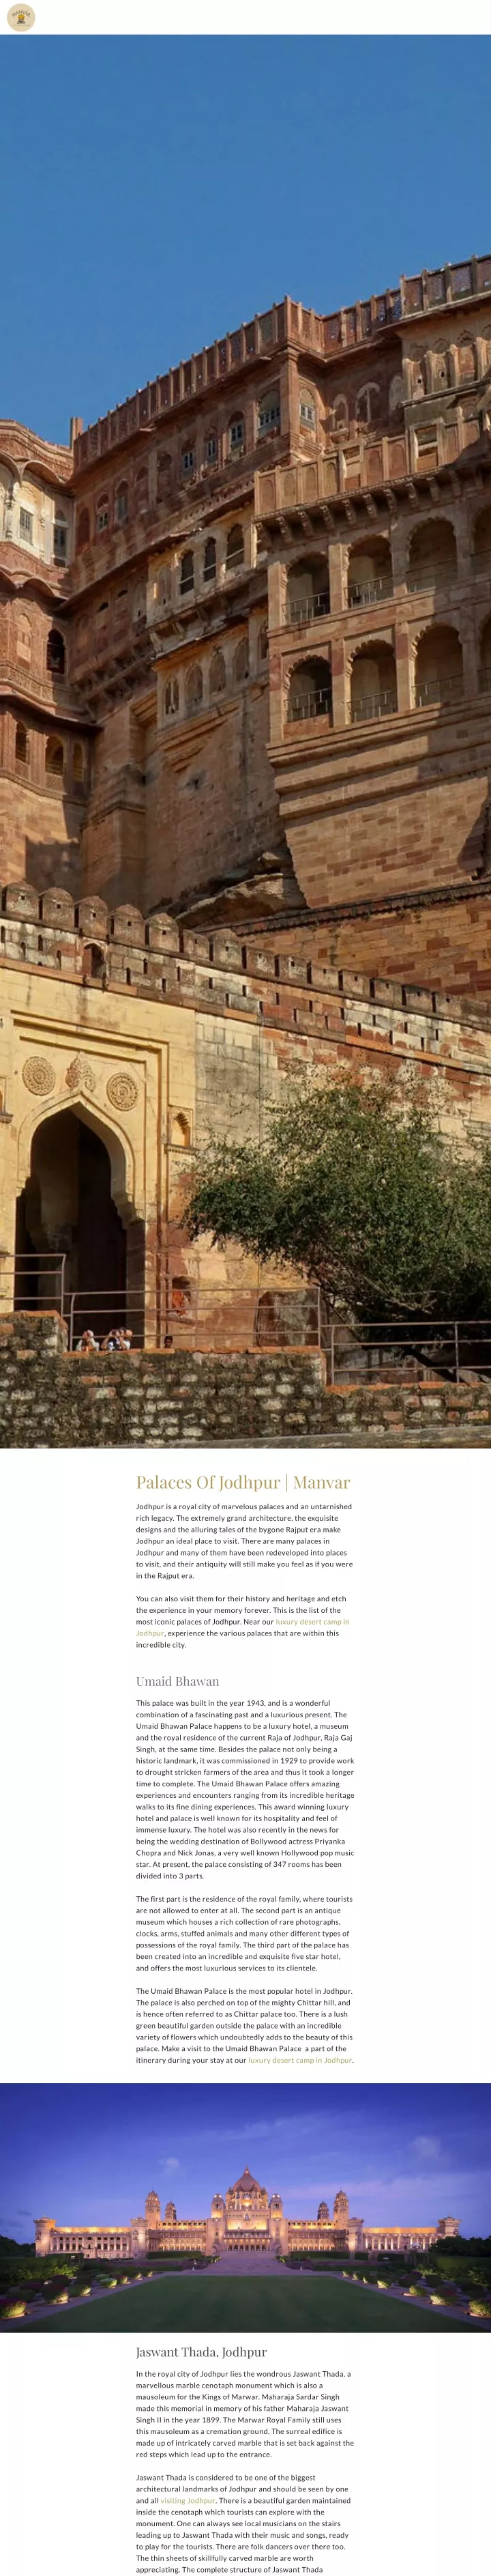 palaces of jodhpur manvar